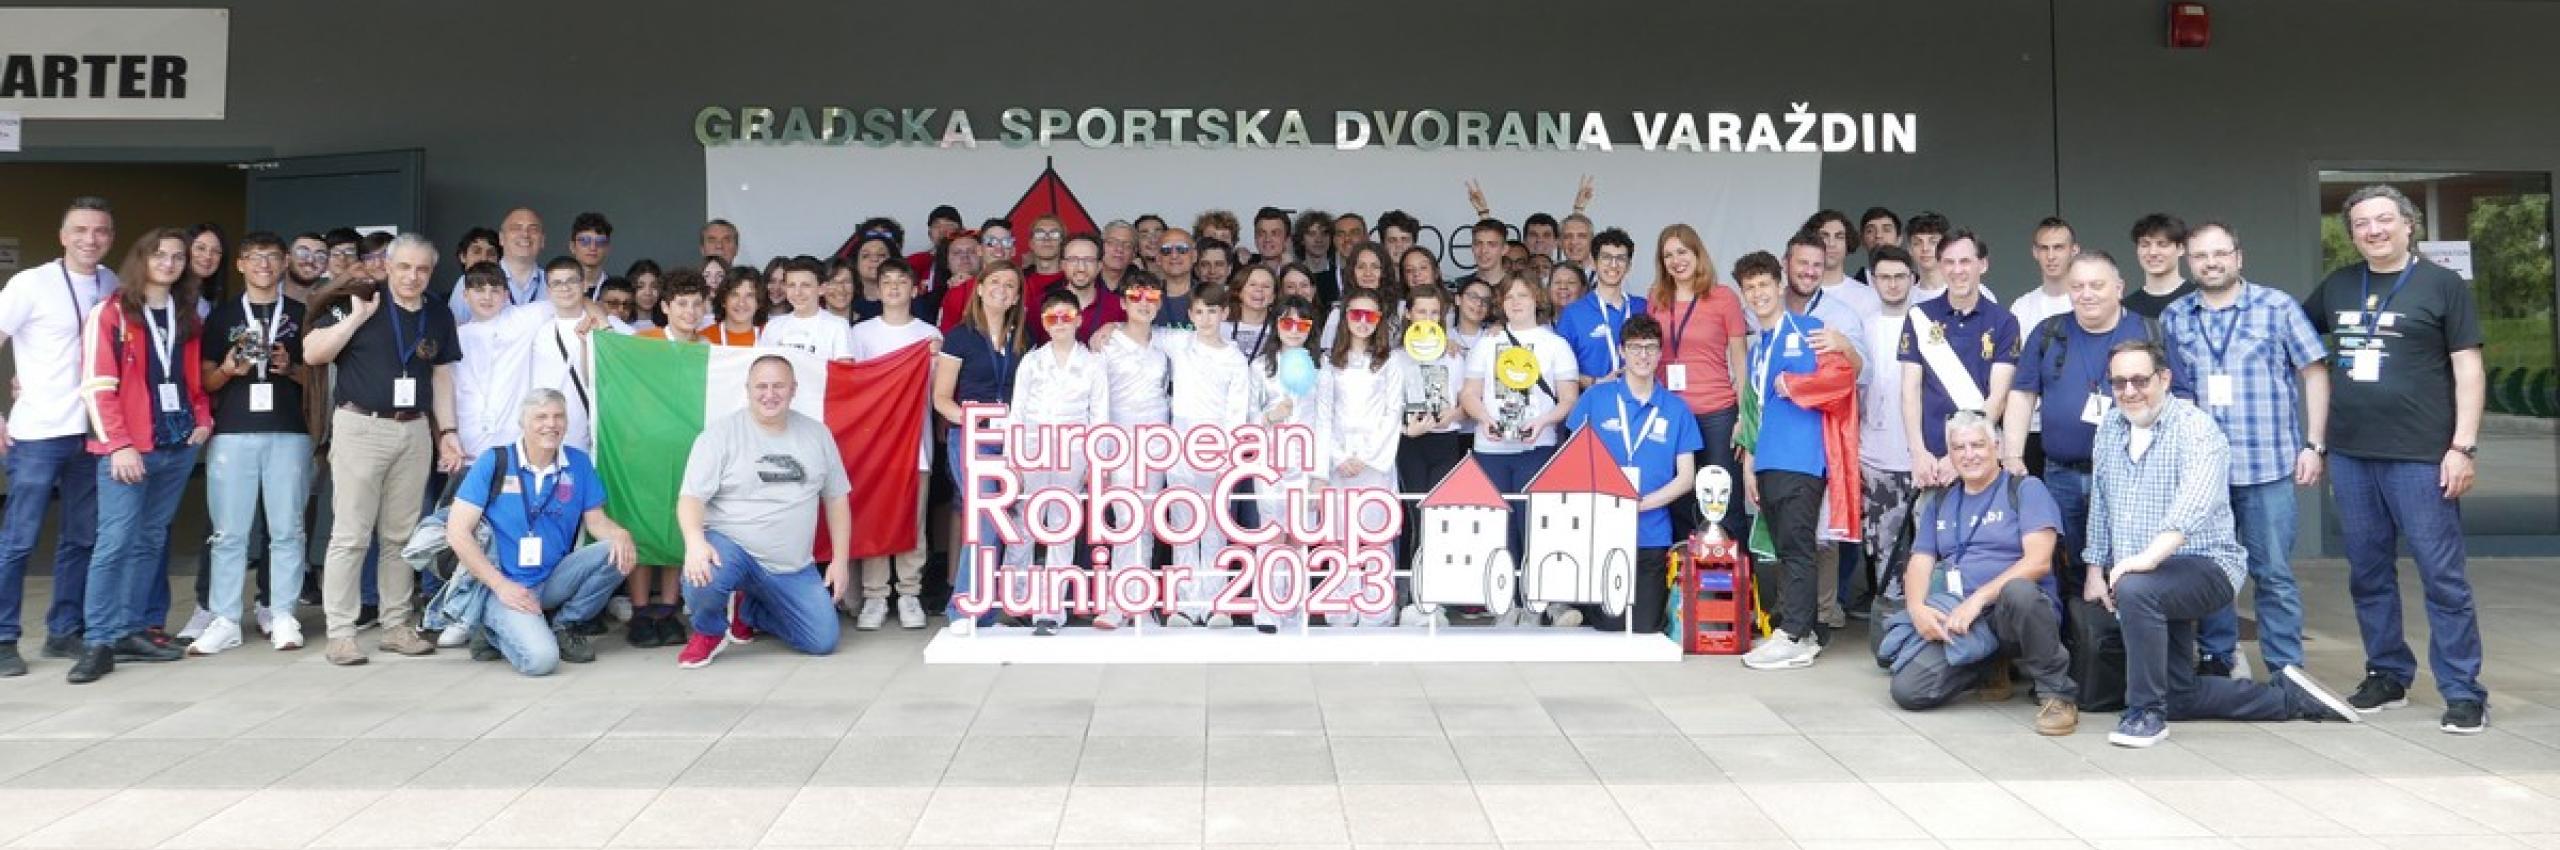 Campionati europei di robotica